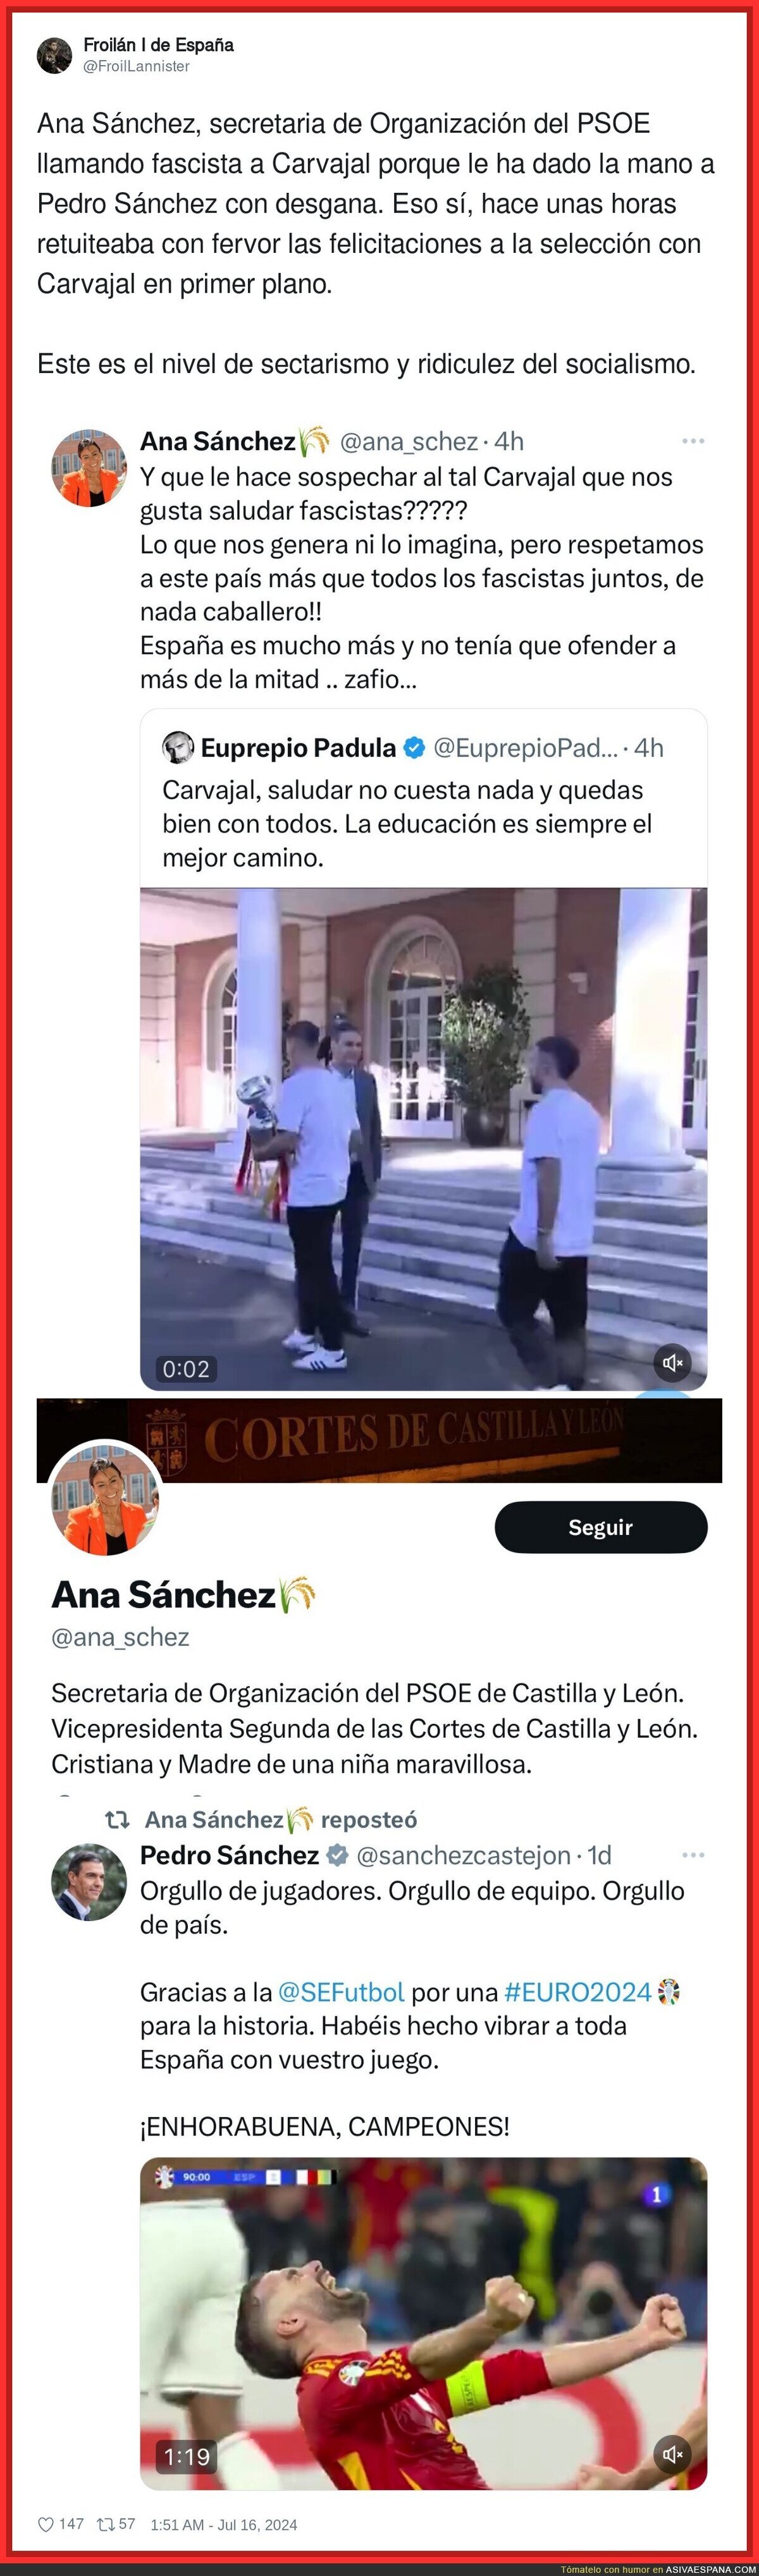 Ana Sánchez, secretaria de Organización del PSOE carga contra Carvajal